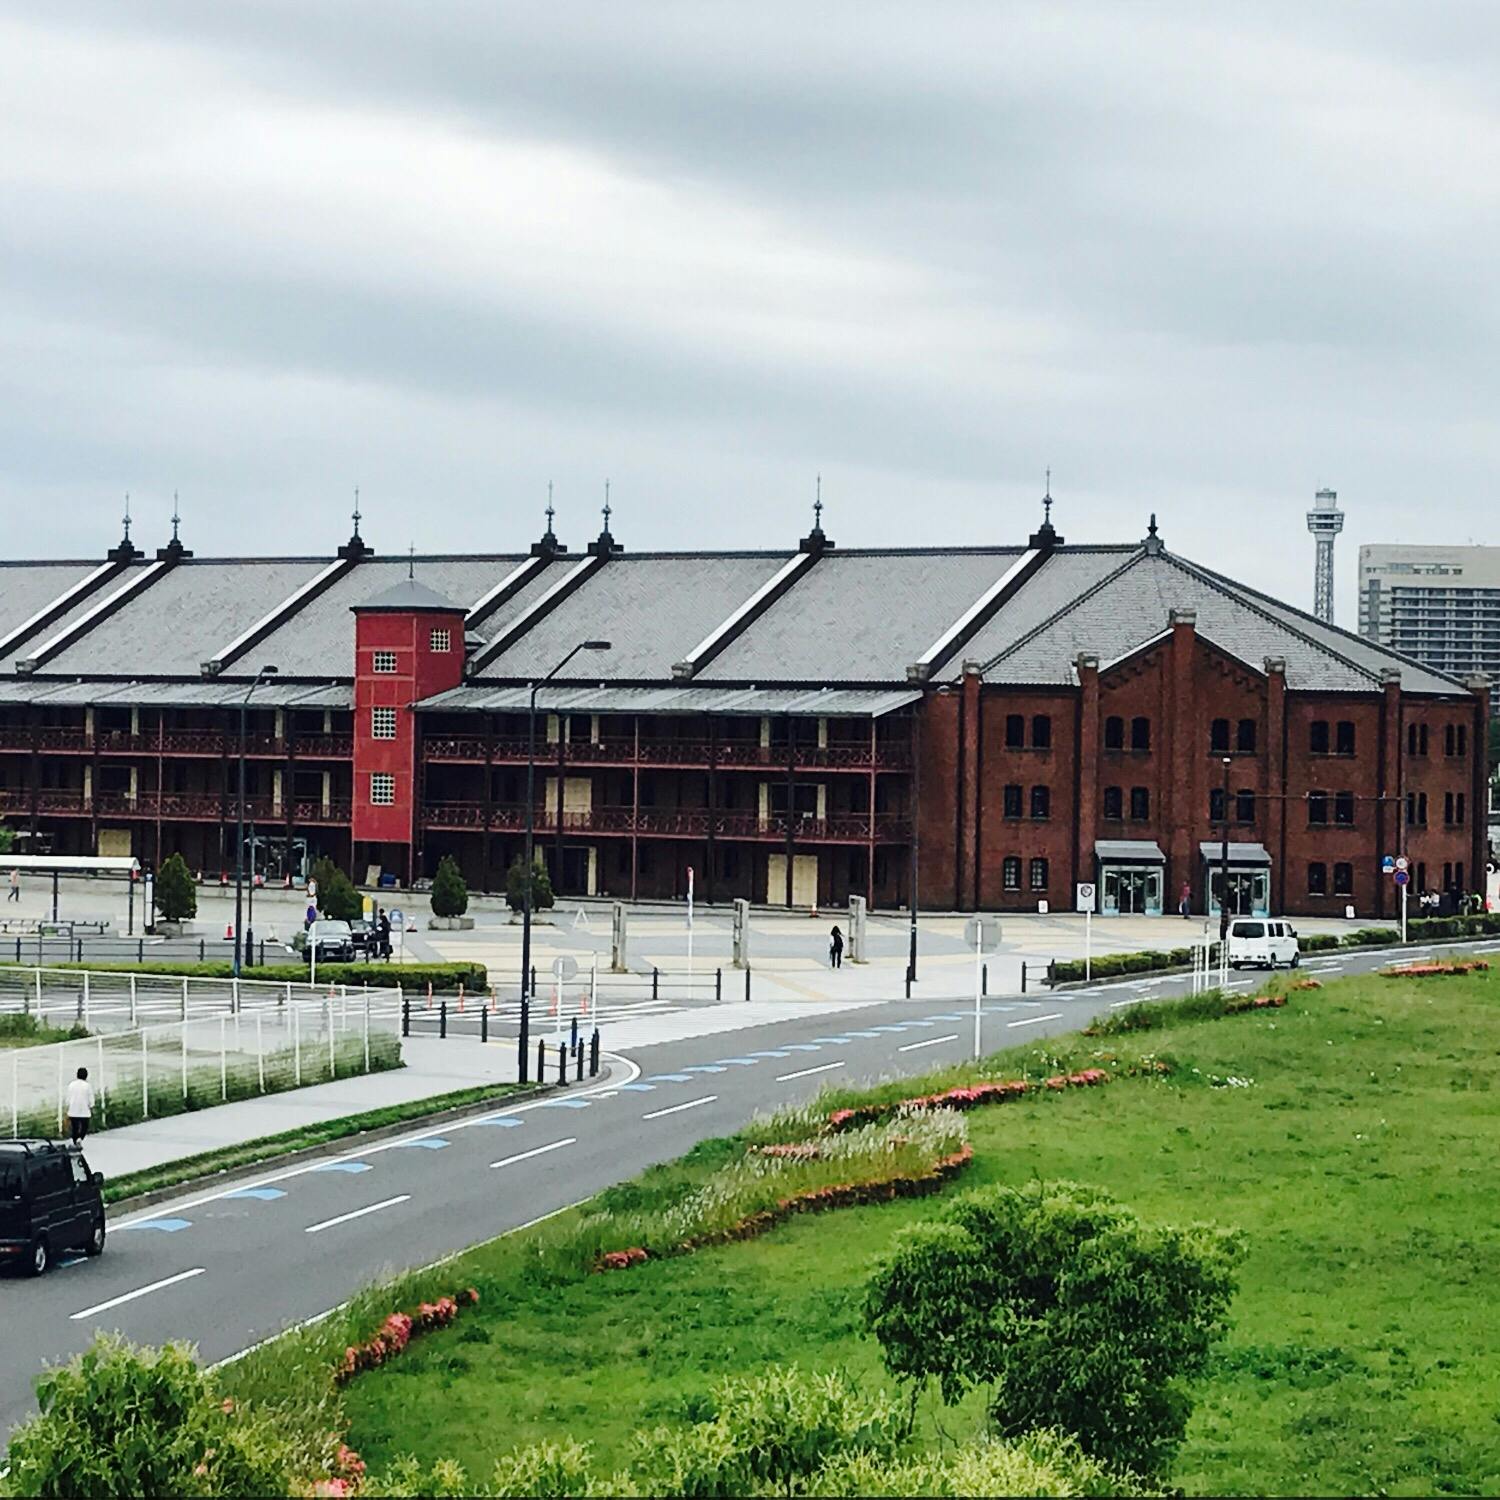 横浜赤レンガ倉庫の投稿写真 感想 みどころ 横浜 赤レンガ倉庫曇りだったのが残念 トリップノート